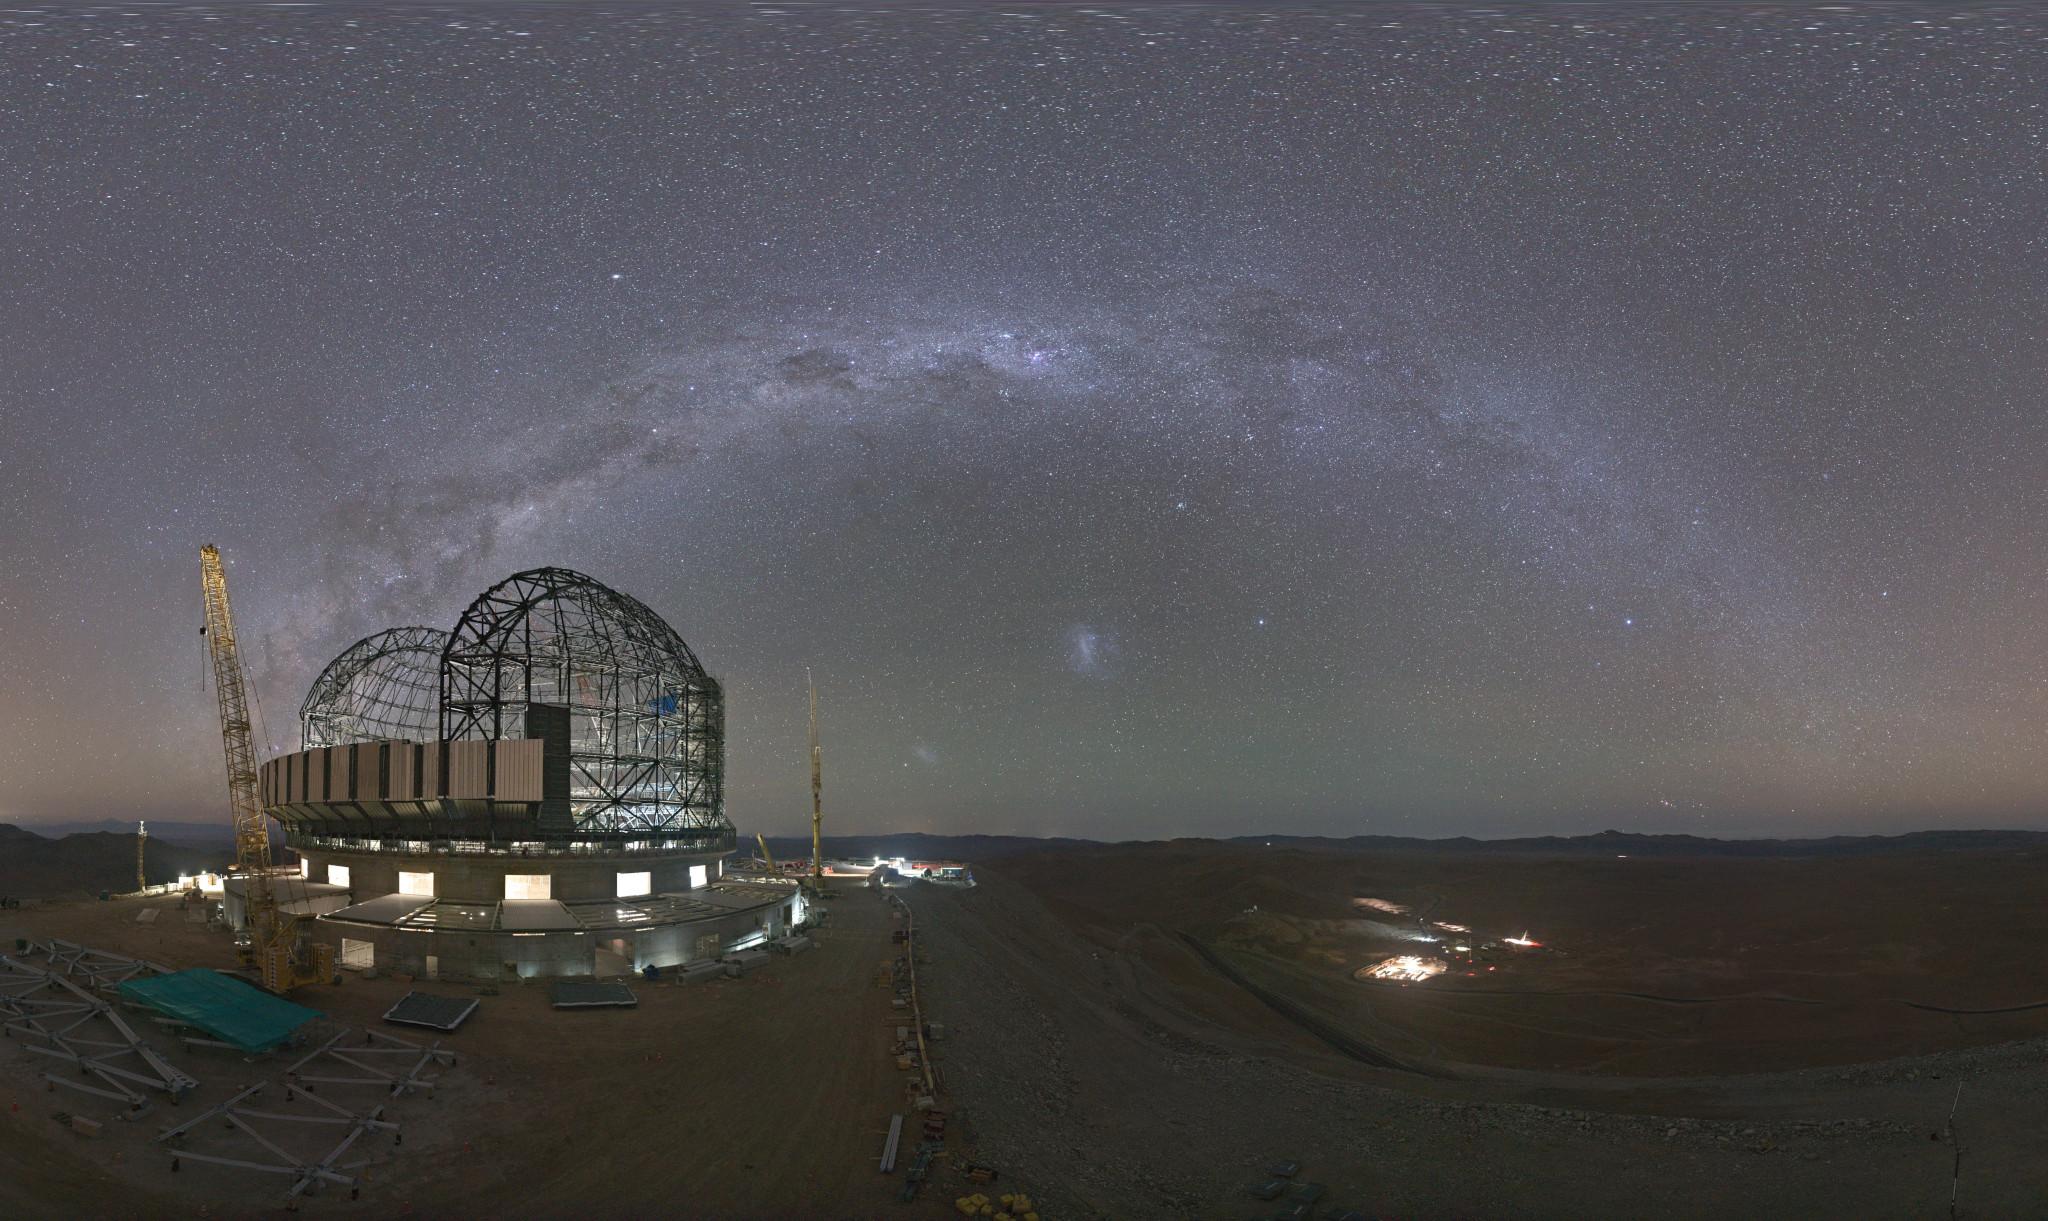 قوس درب التبّانة يمتدّ في سماء الليل بينما يظهر موقع بناء تلسكوب على يسار المقدّمة